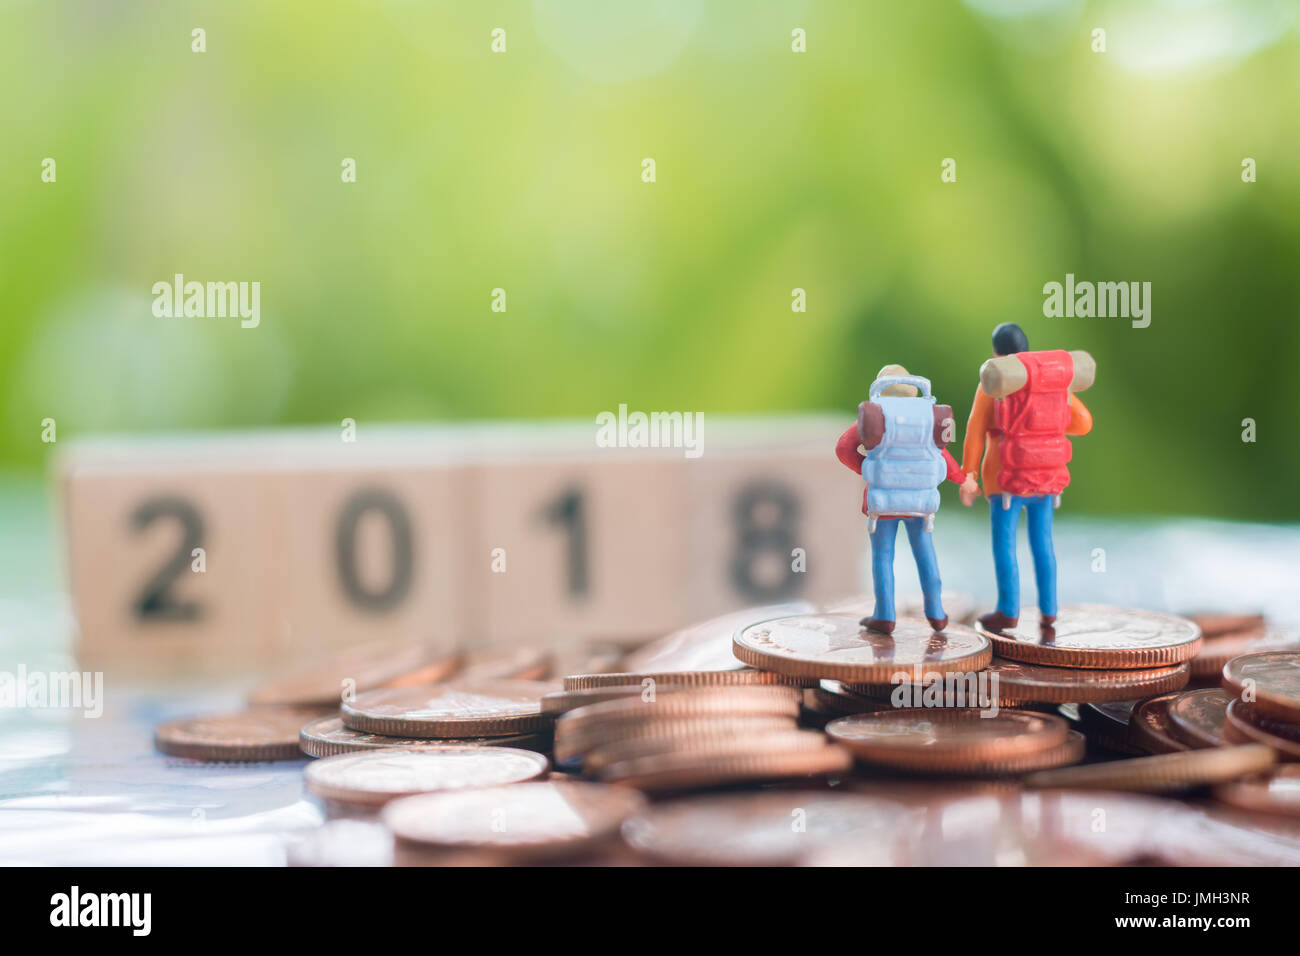 Miniatur Rucksacktouristen auf dem Stapel Münzen schlagen auf ihren Rücken zu und freut sich auf hölzerne Zahlen 2018, Reisen und Business-Konzept. Stockfoto